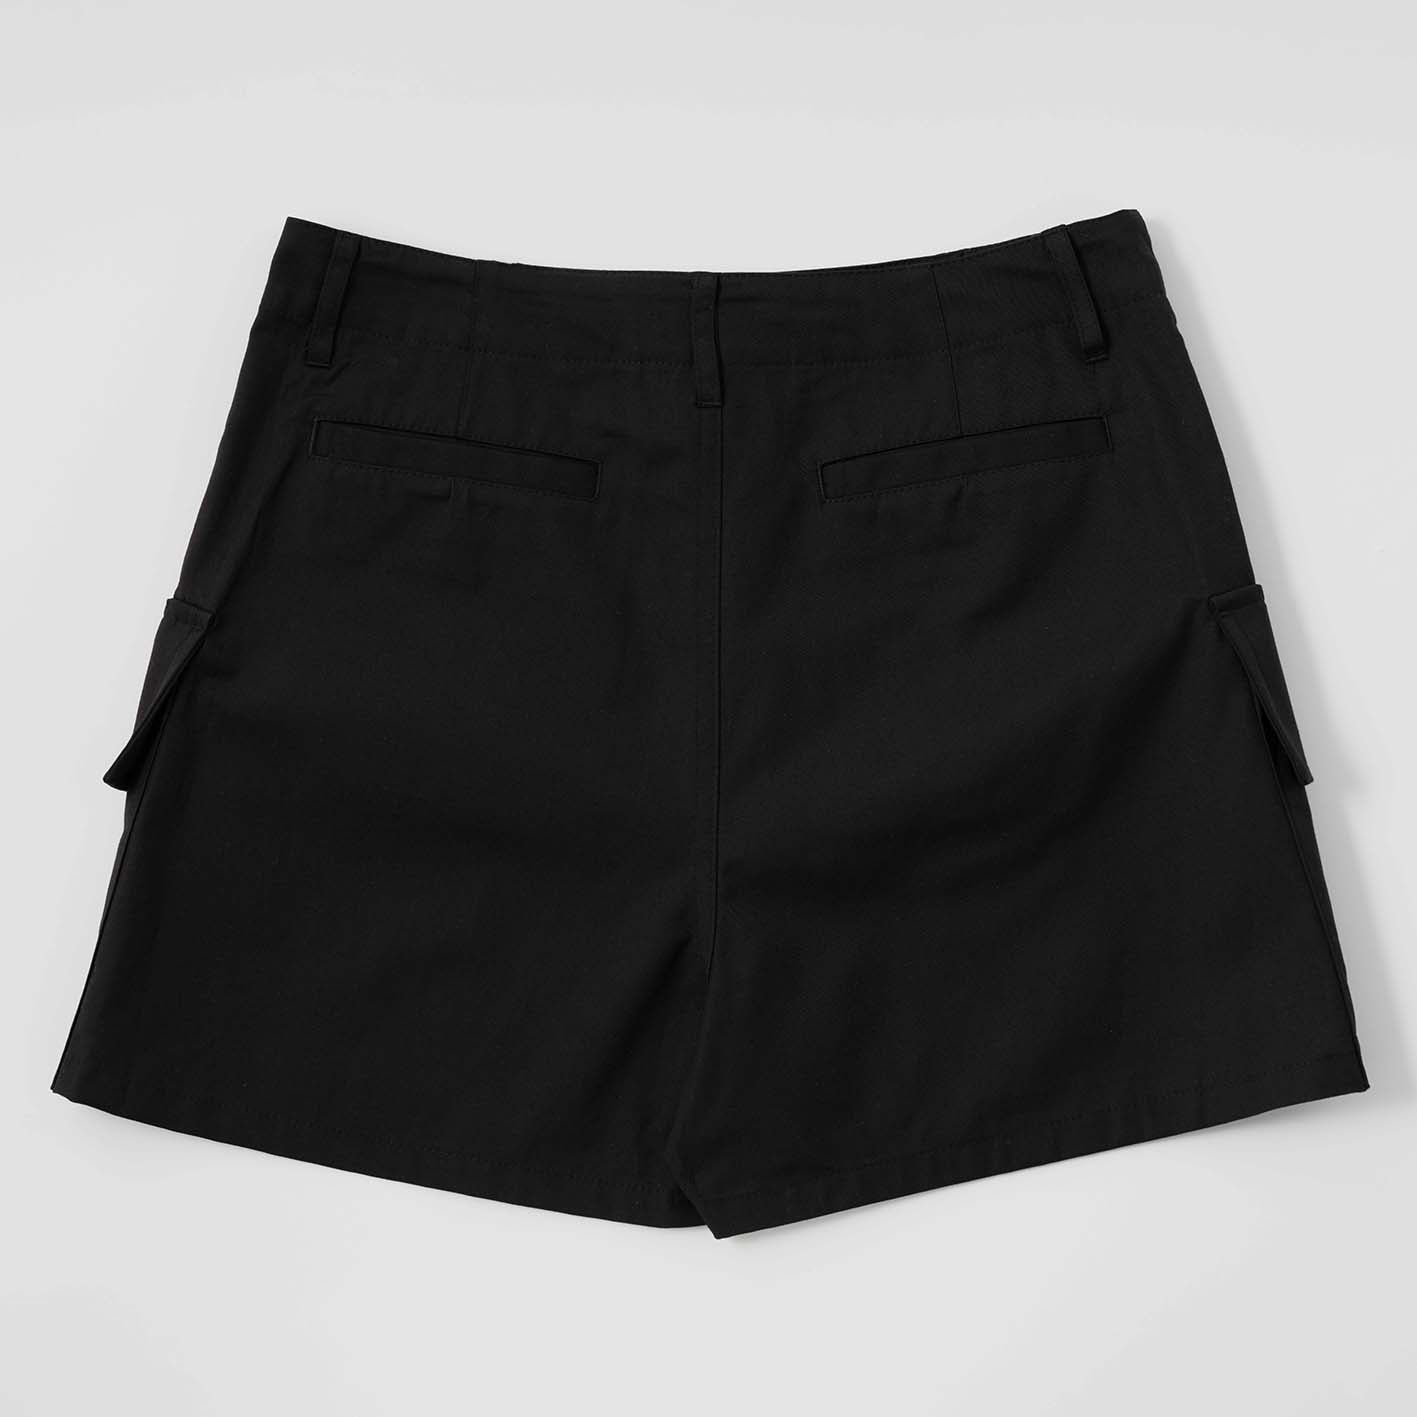 Unisex cargo shorts